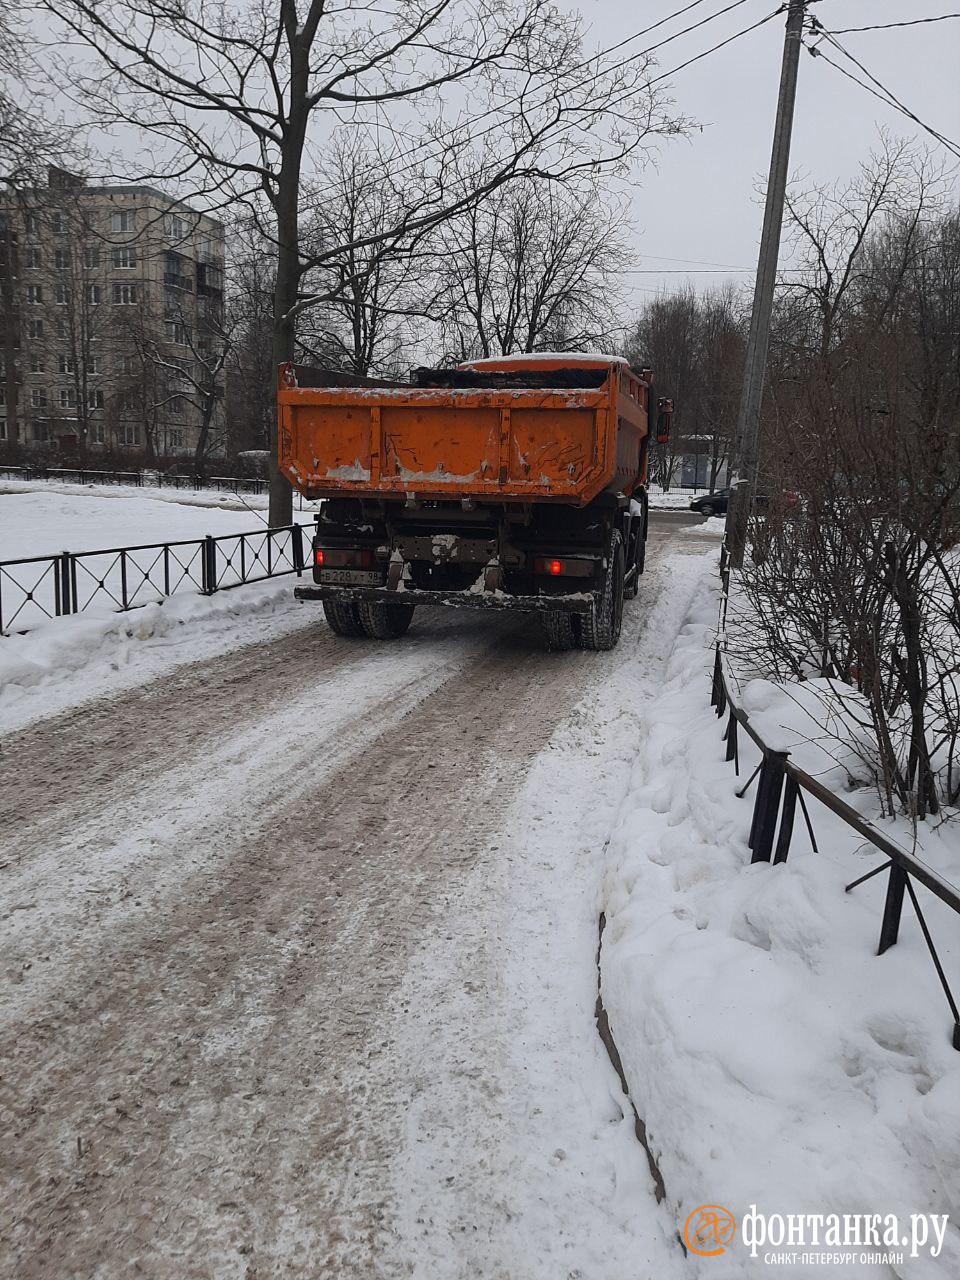 Кучи грязного снега появились в одном из дворов Петербурга. Власти уже ищут виноватых